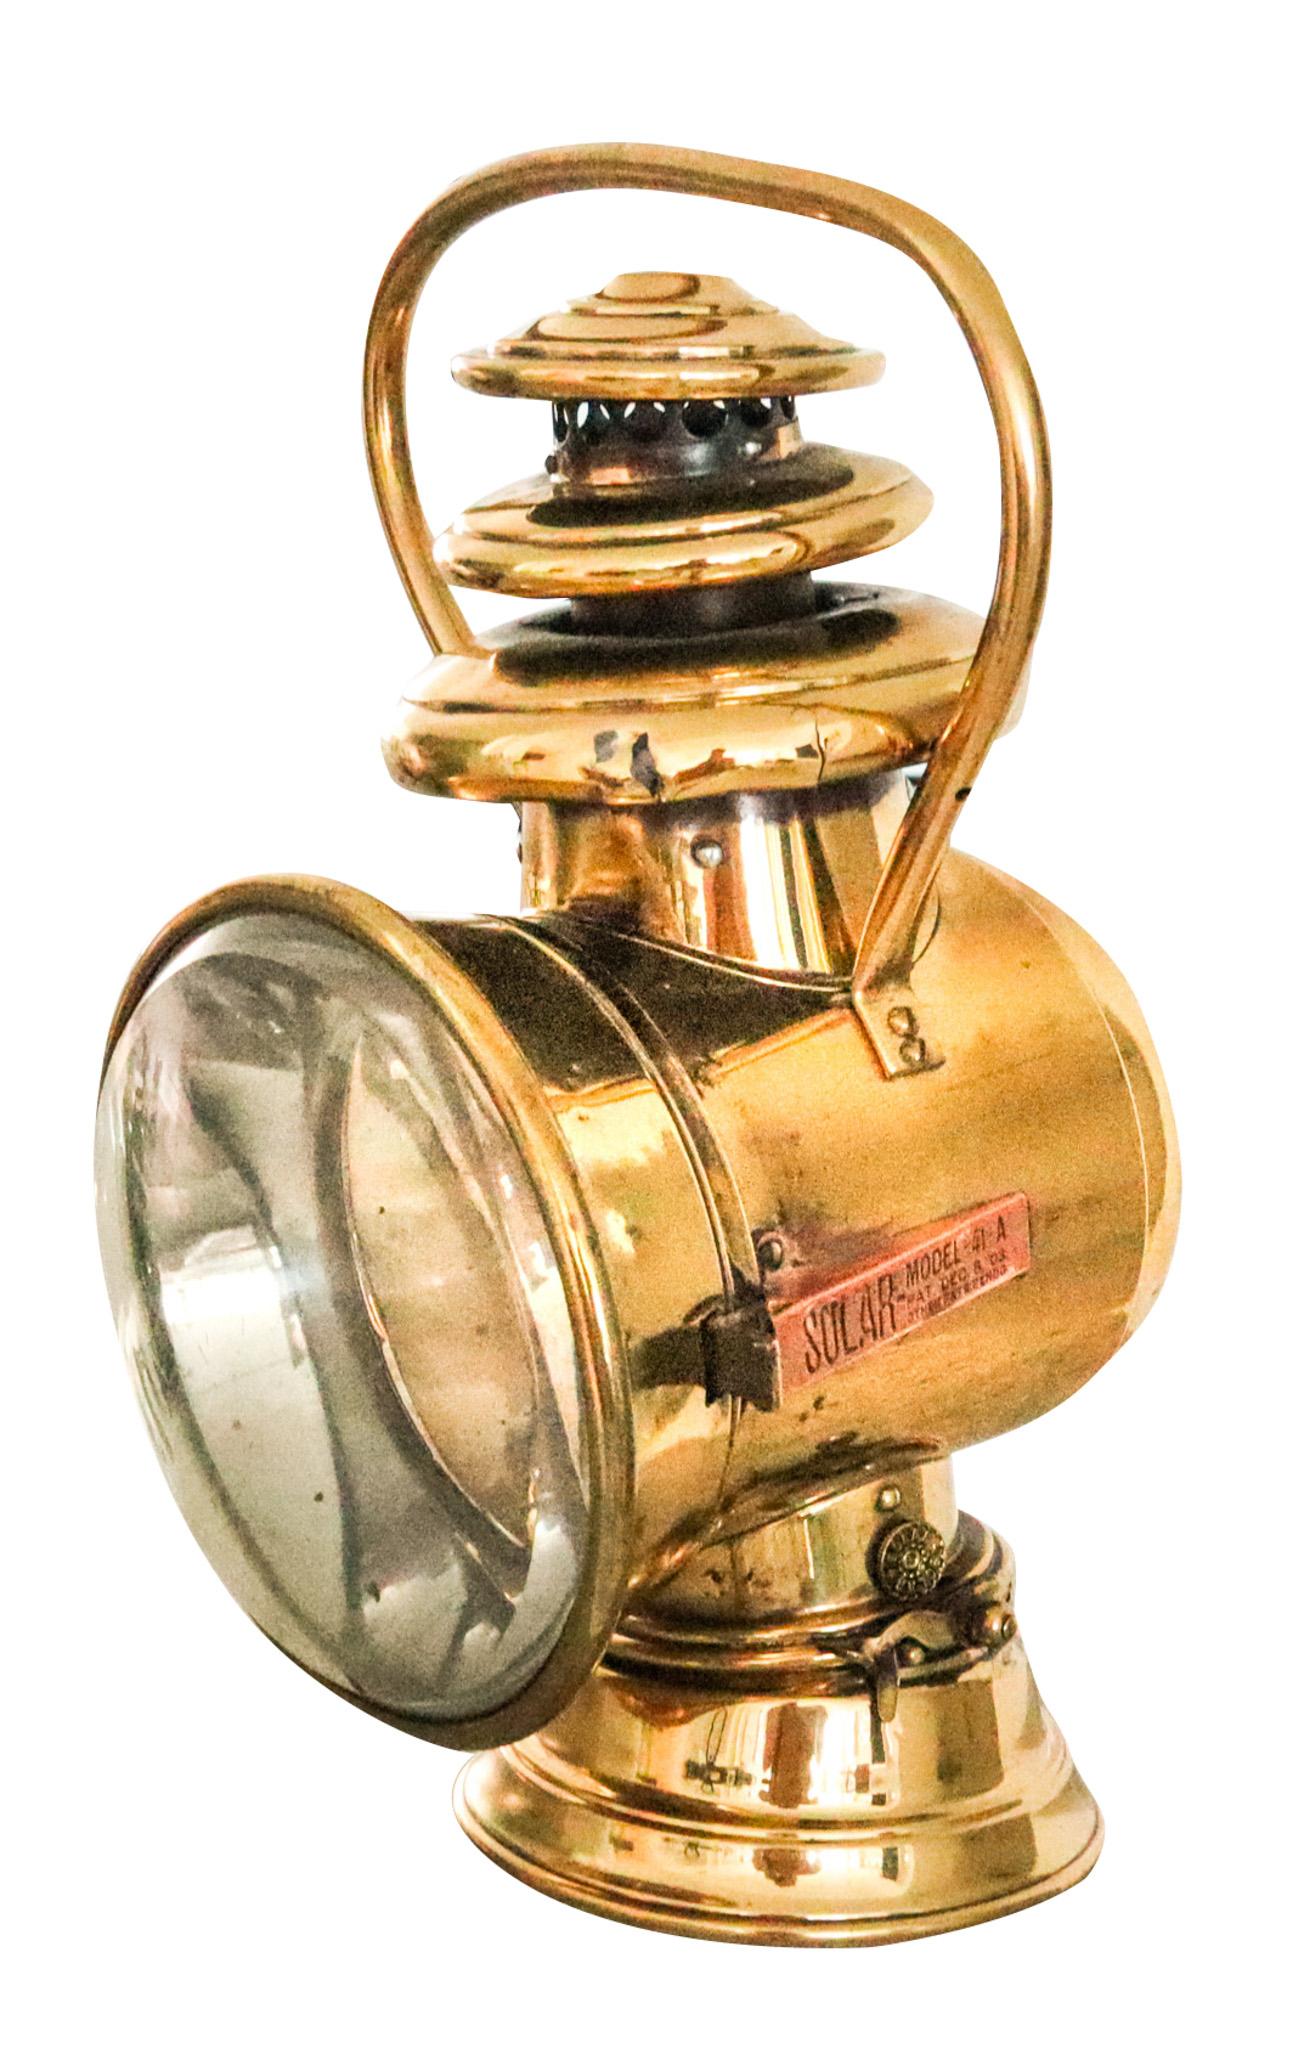 Solar-Kerosin-Autolampe, entworfen von The Badger Brass Mfg Co.

Sehr schönes und sehr dekoratives Stück, hergestellt in Amerika von The Badger Brass Mfg Co. im Jahre 1903. Dies ist eine der frühesten Petroleumlampen, die für den Anbau an frühe